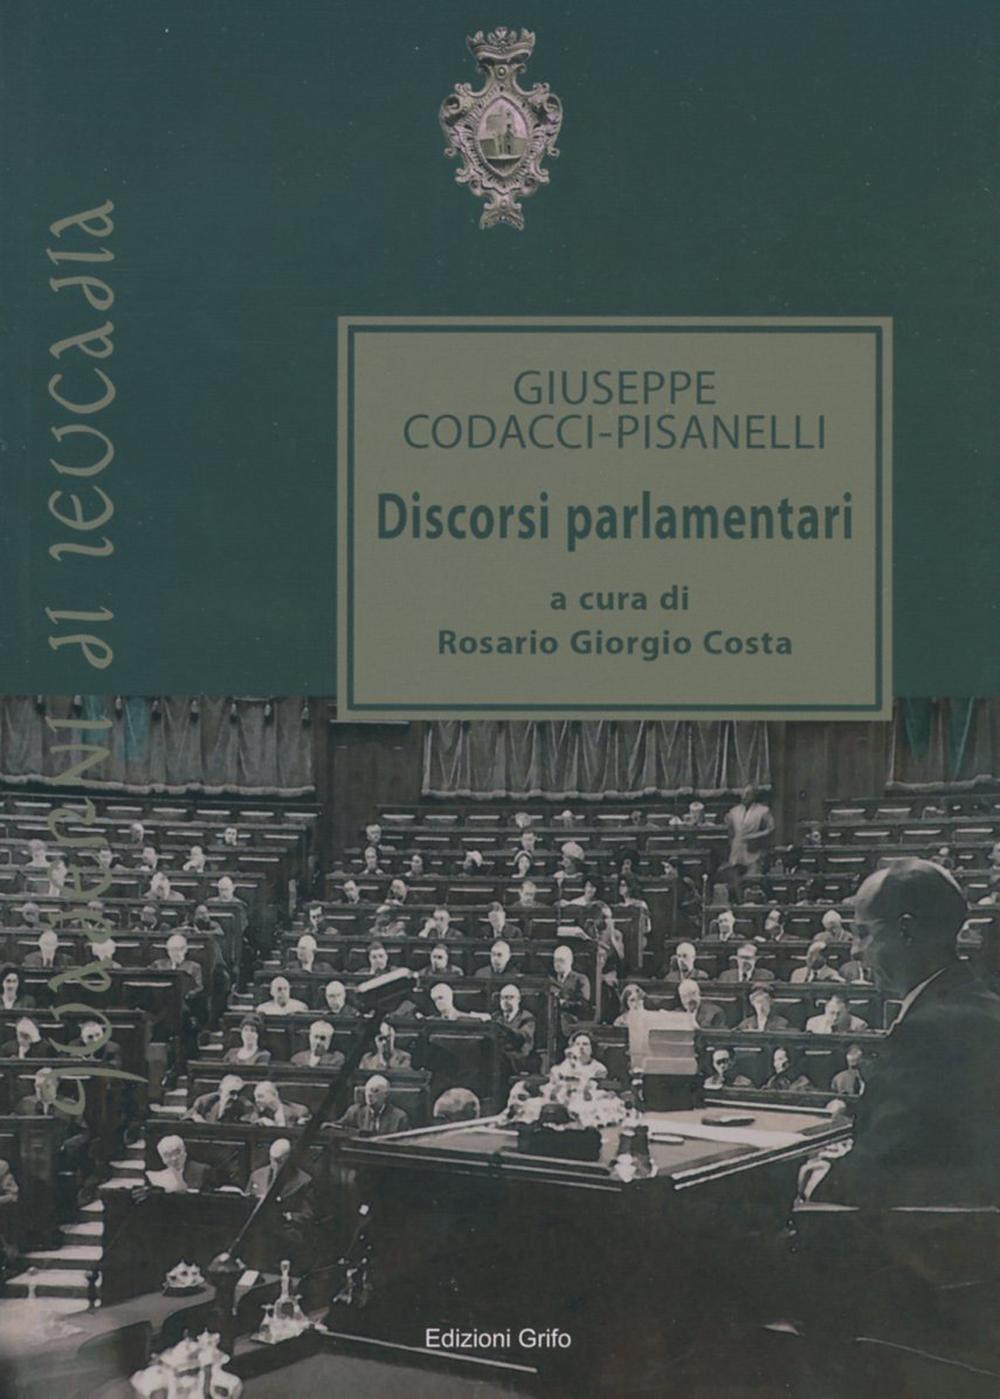 Giuseppe Codacci-Pisanelli. Discorsi parlamentari